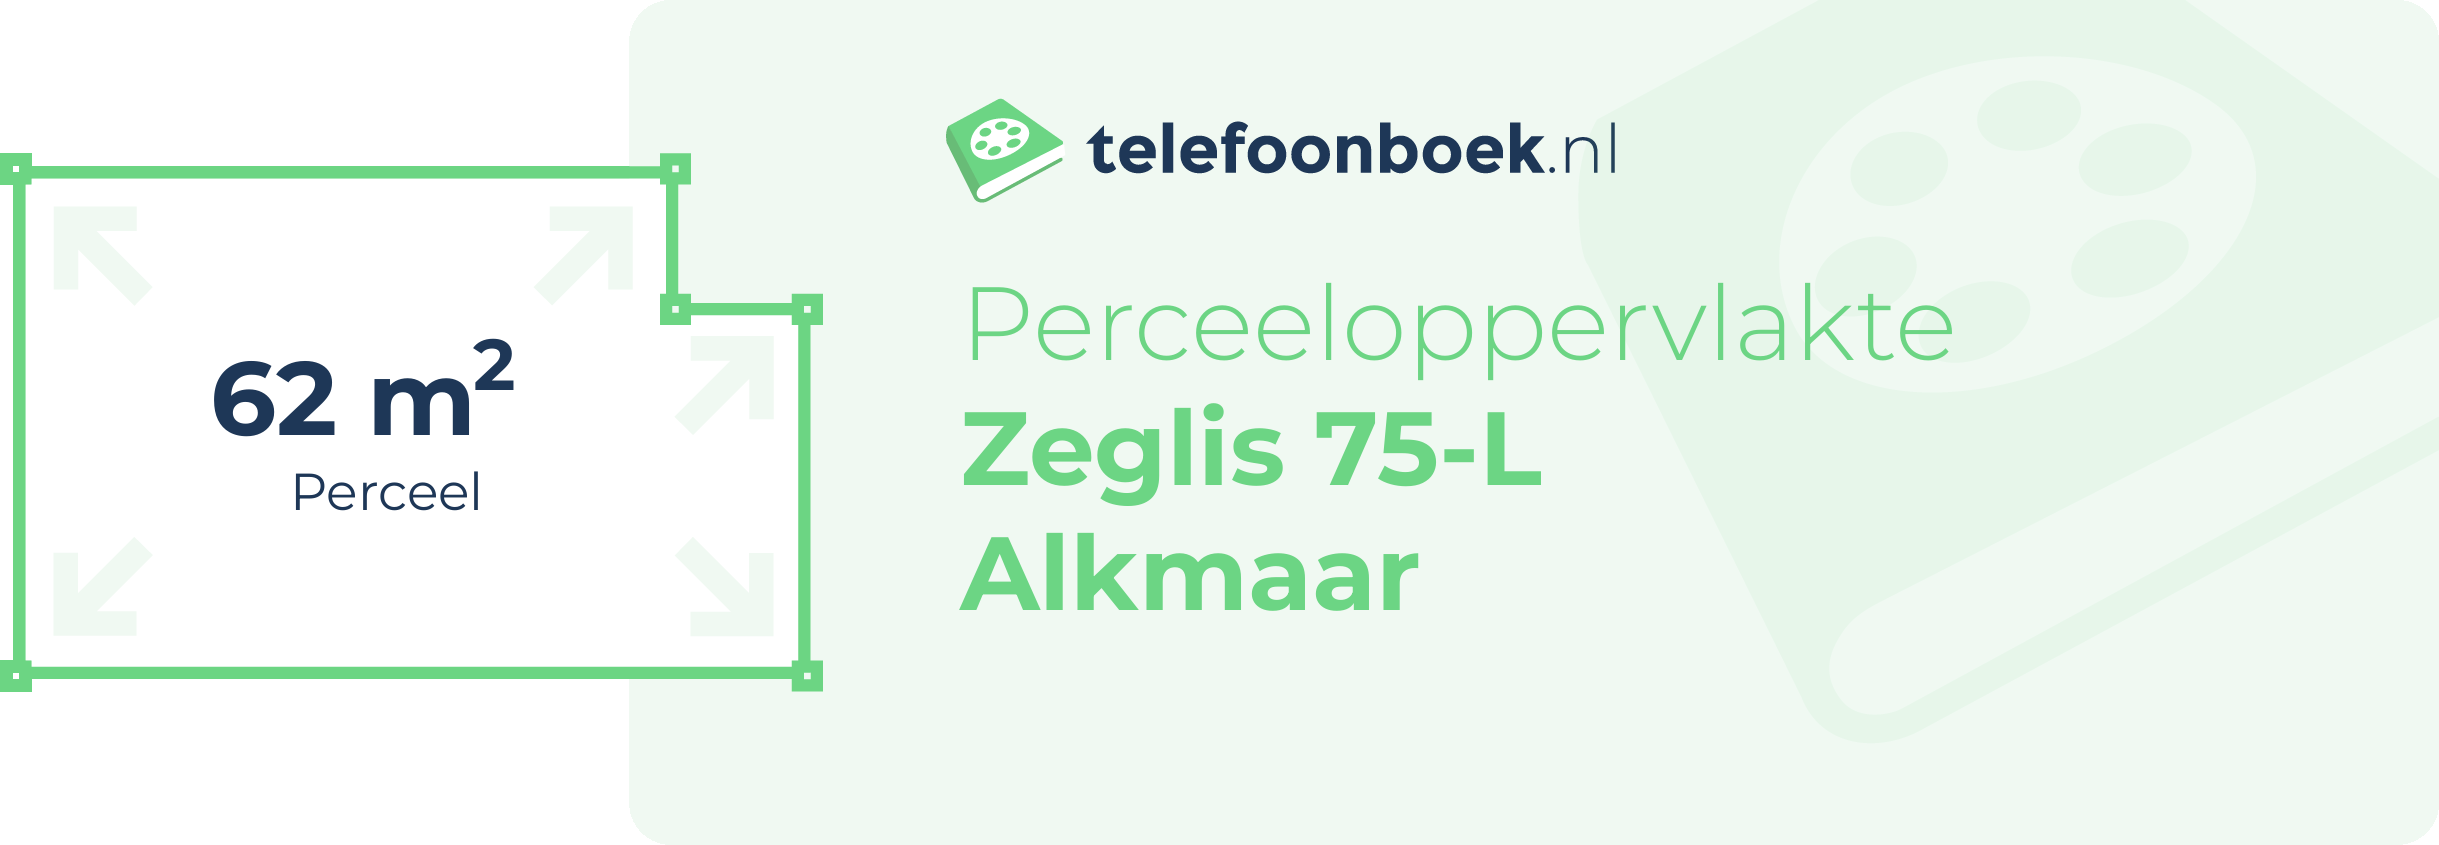 Perceeloppervlakte Zeglis 75-L Alkmaar